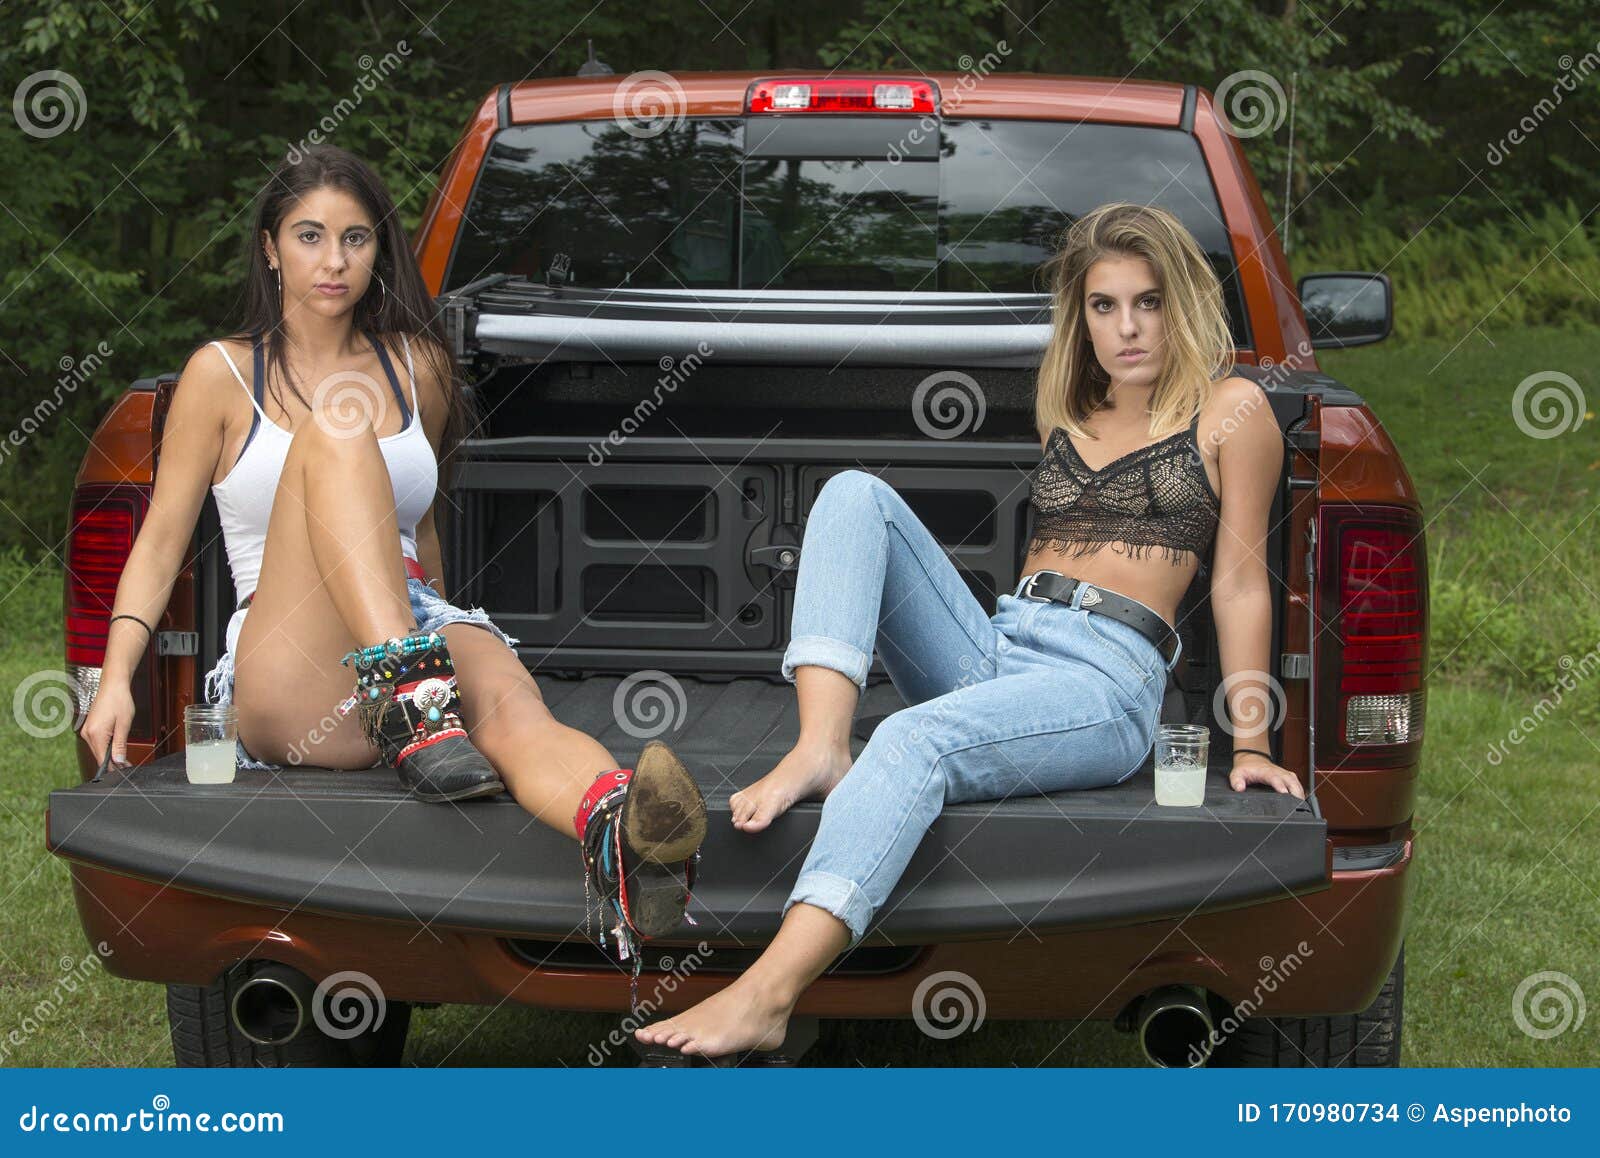 Naked Girls In Trucks